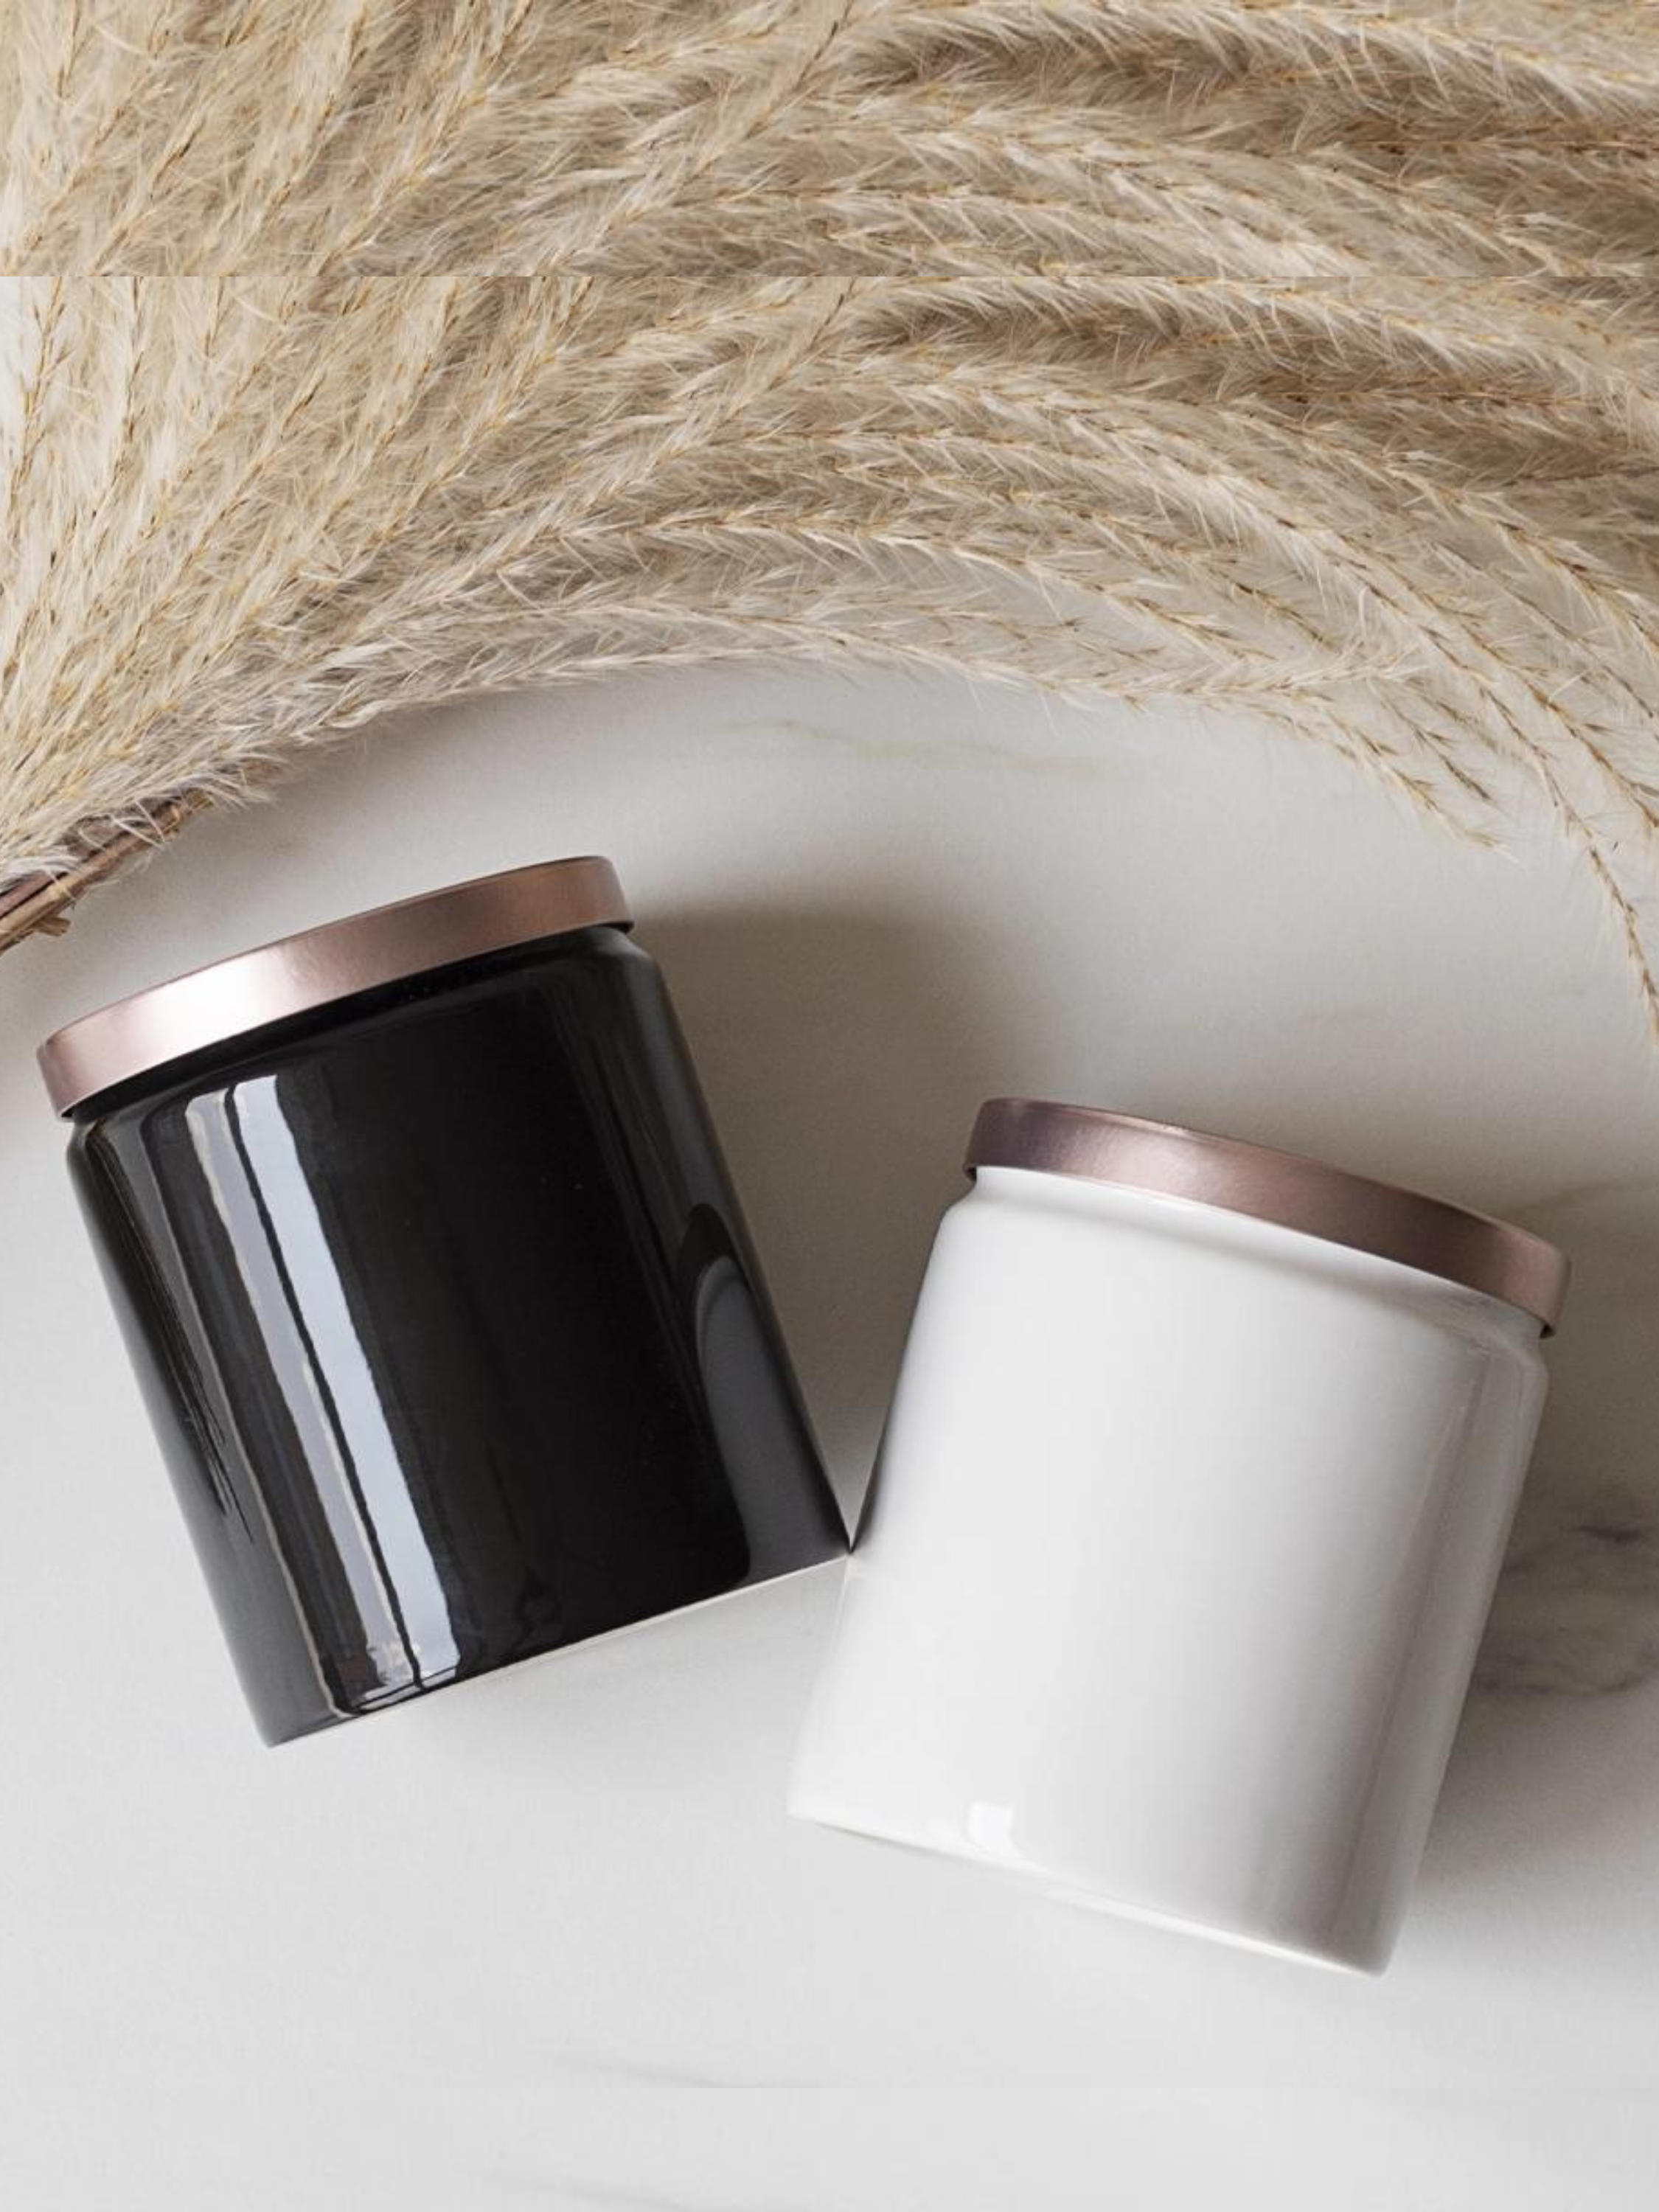 Luxury Ceramics Wood Grain Candle Jar (Soil) – Lightinjar